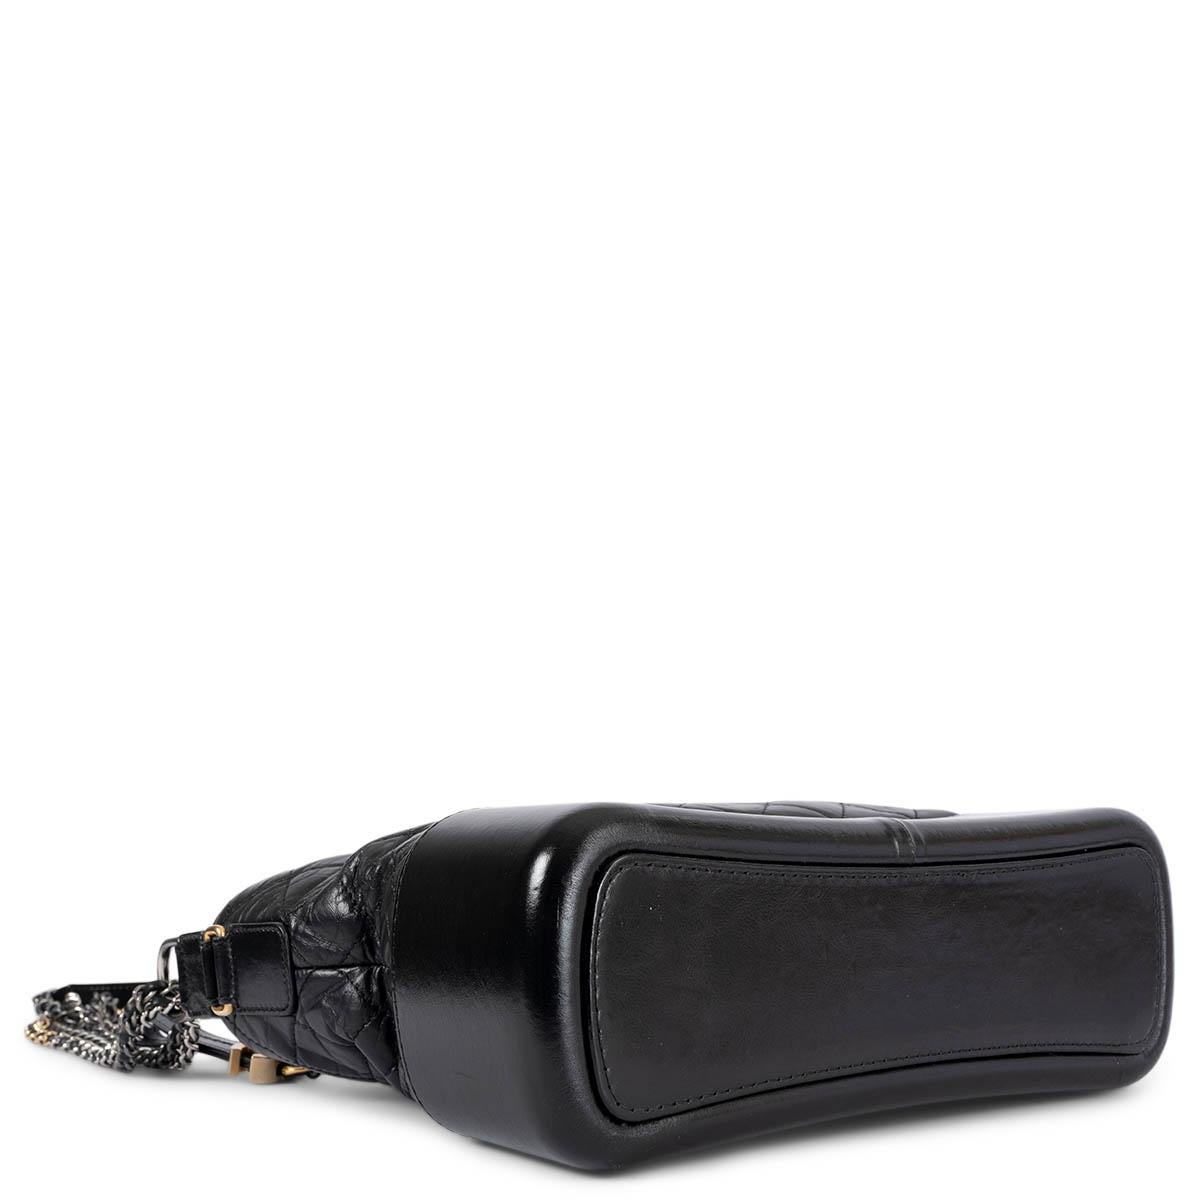 Women's CHANEL black Aged Calfskin leather GABRIELLE MEDIUM HOBO Shoulder Bag For Sale